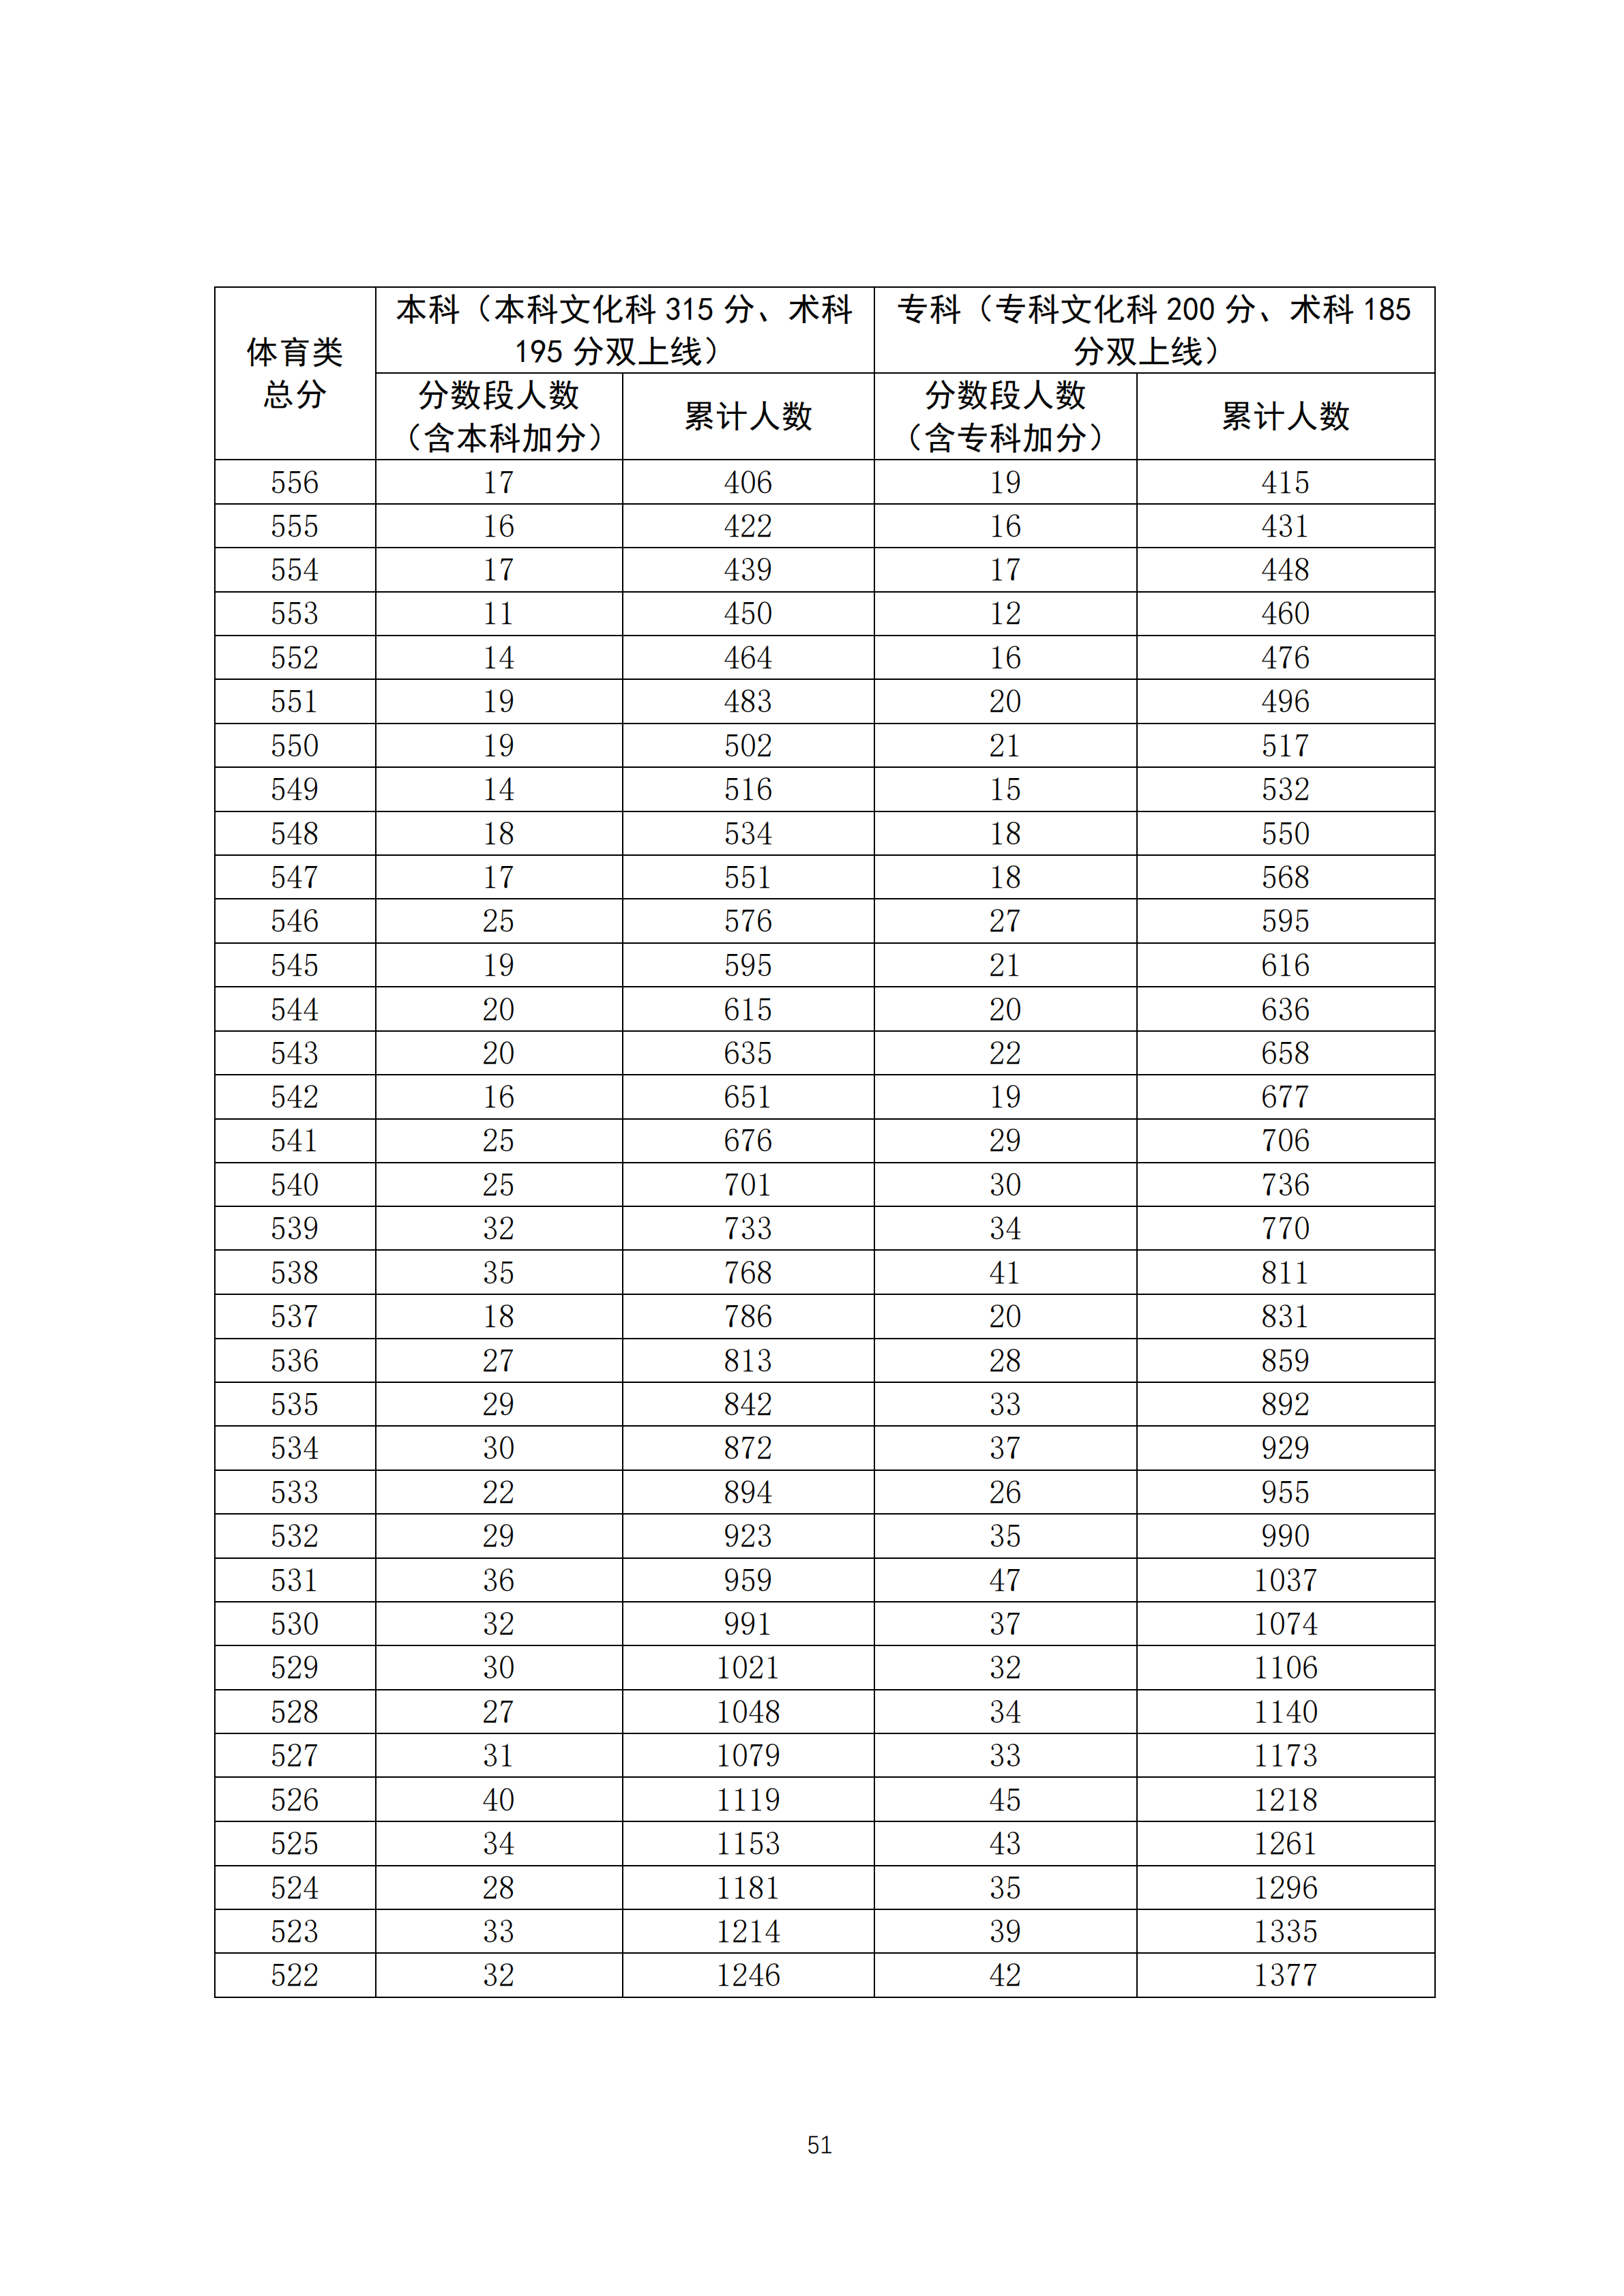 2020广东高考一分一段表 体育类成绩排名